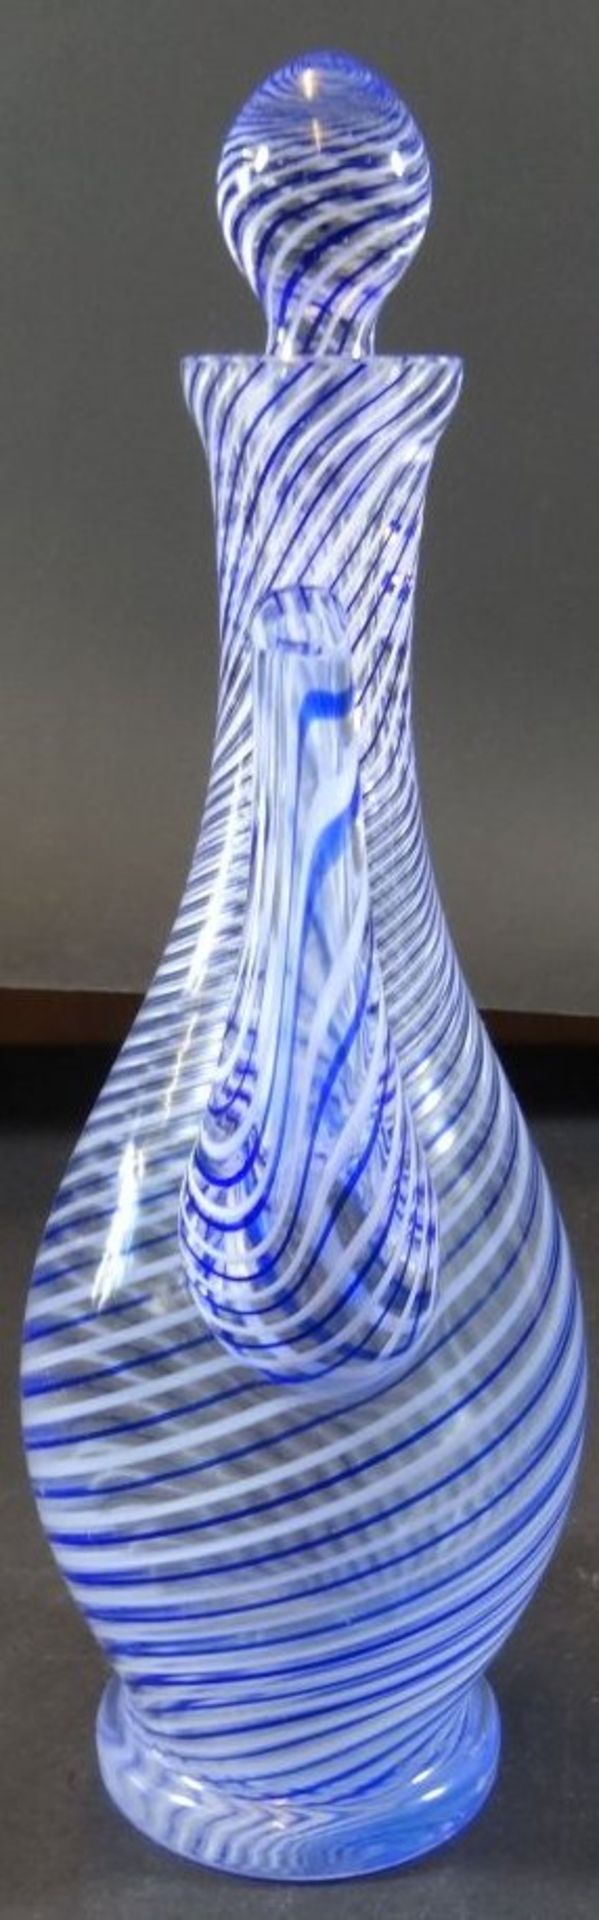 Weinkanne "Paşabahçe" blau/weisse Streifen, H-27 cm - Bild 3 aus 6